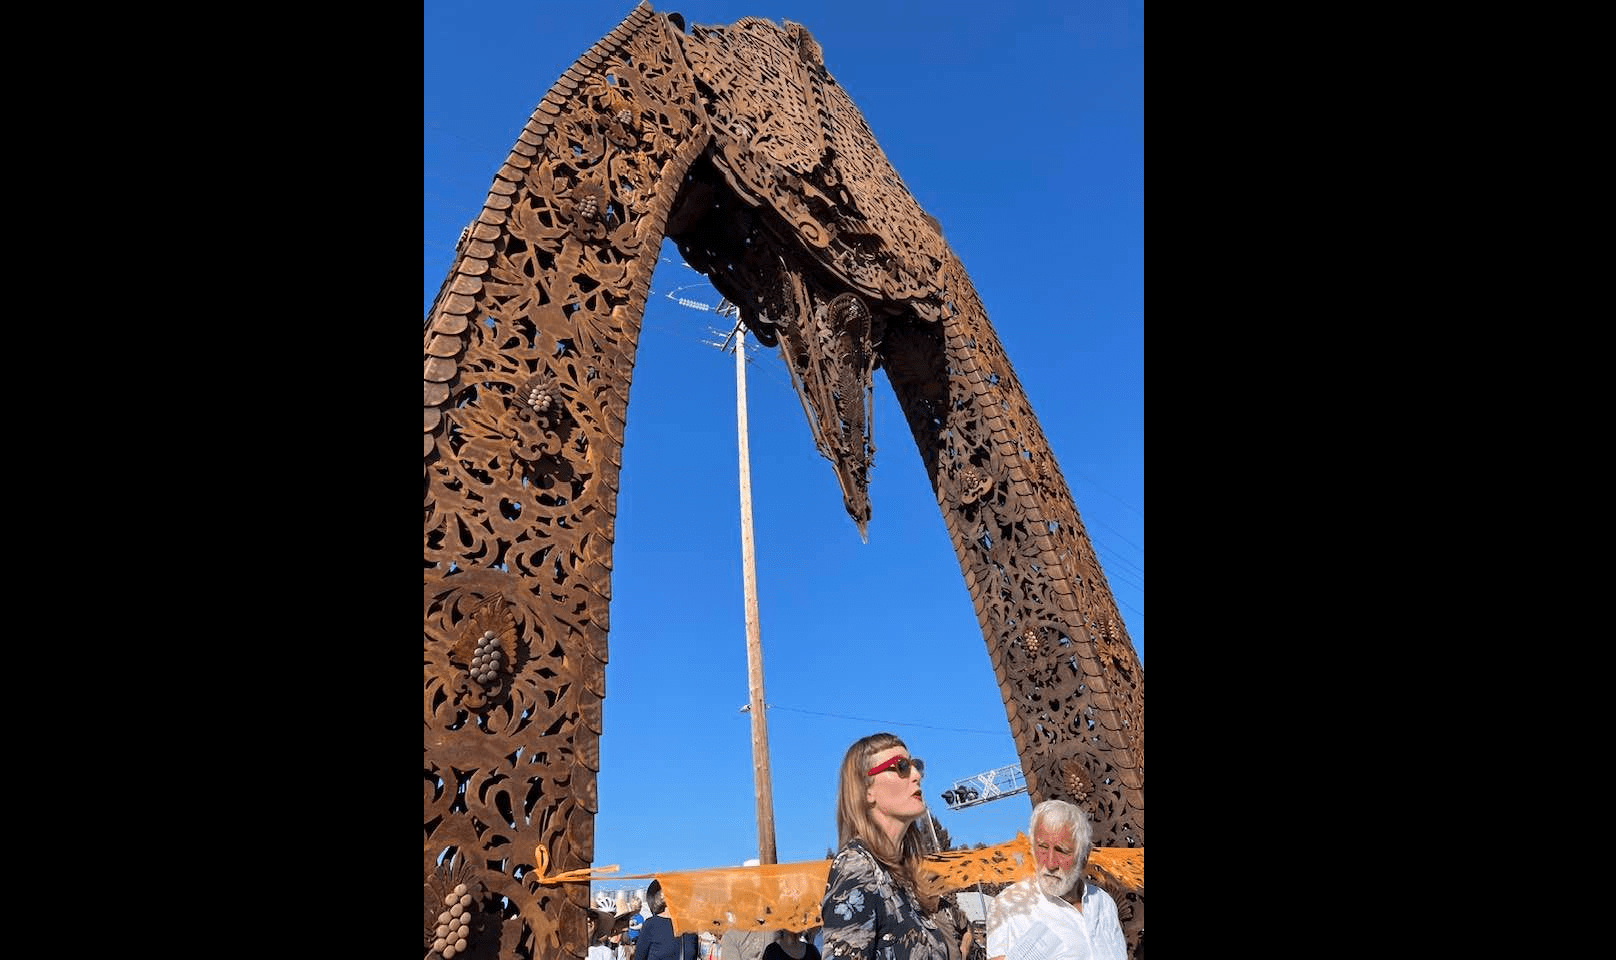 petaluma-river-arch-sculpture-picture-from-petaluma-mayor-teresa-barrett